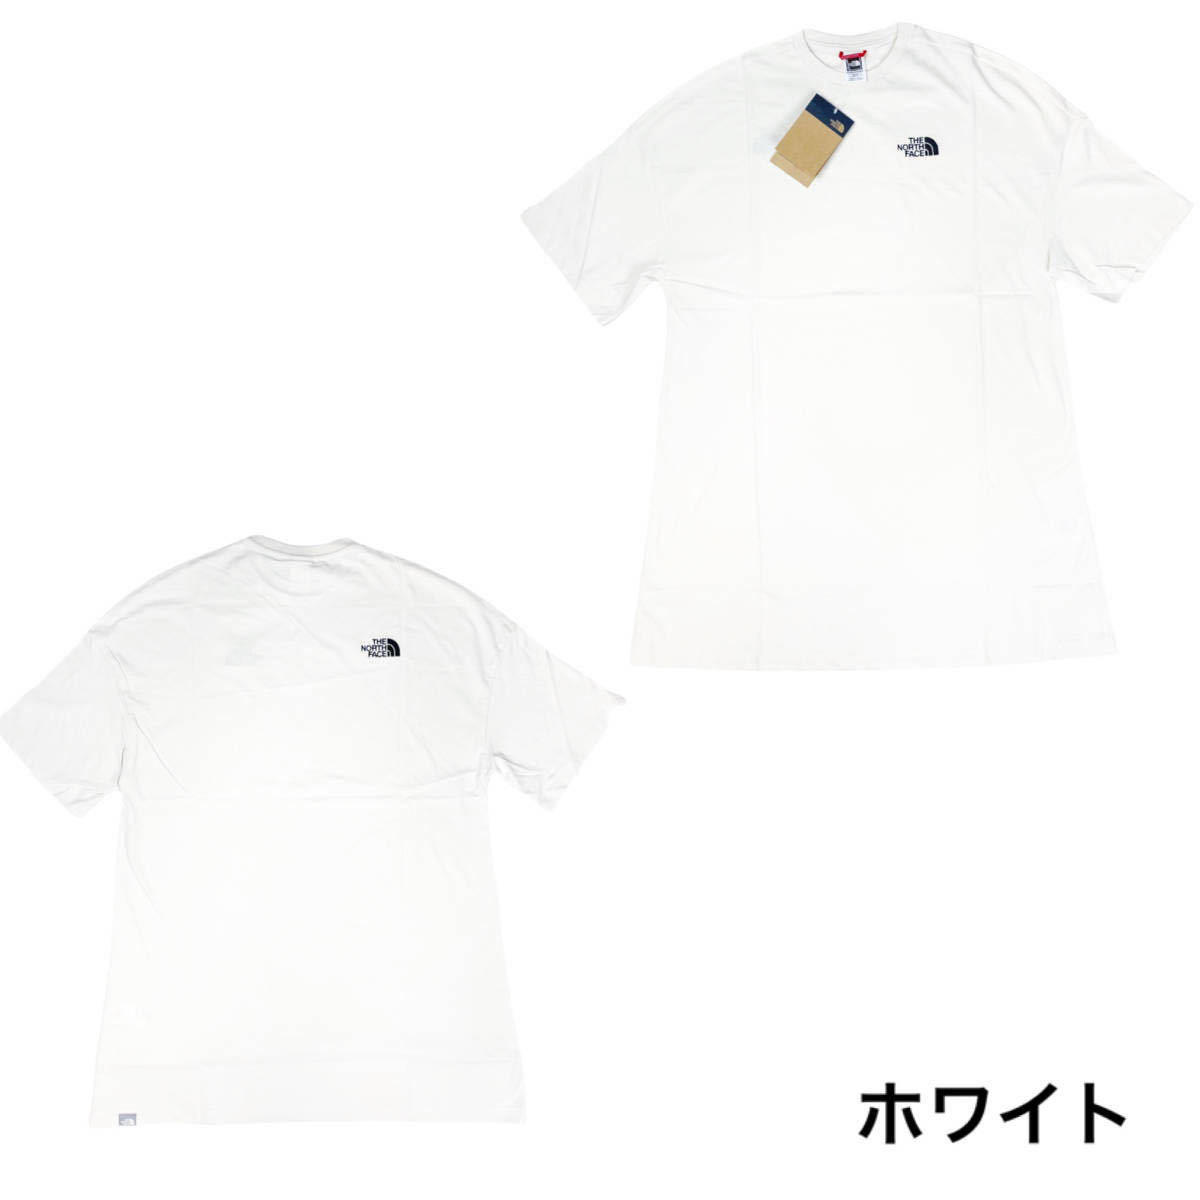 ノースフェイス Tシャツ ドレス NF0A55AP ワンピース レディース デカT ホワイト XSサイズ THE NORTH FACE WOMEN'S S/S T DRESS 新品